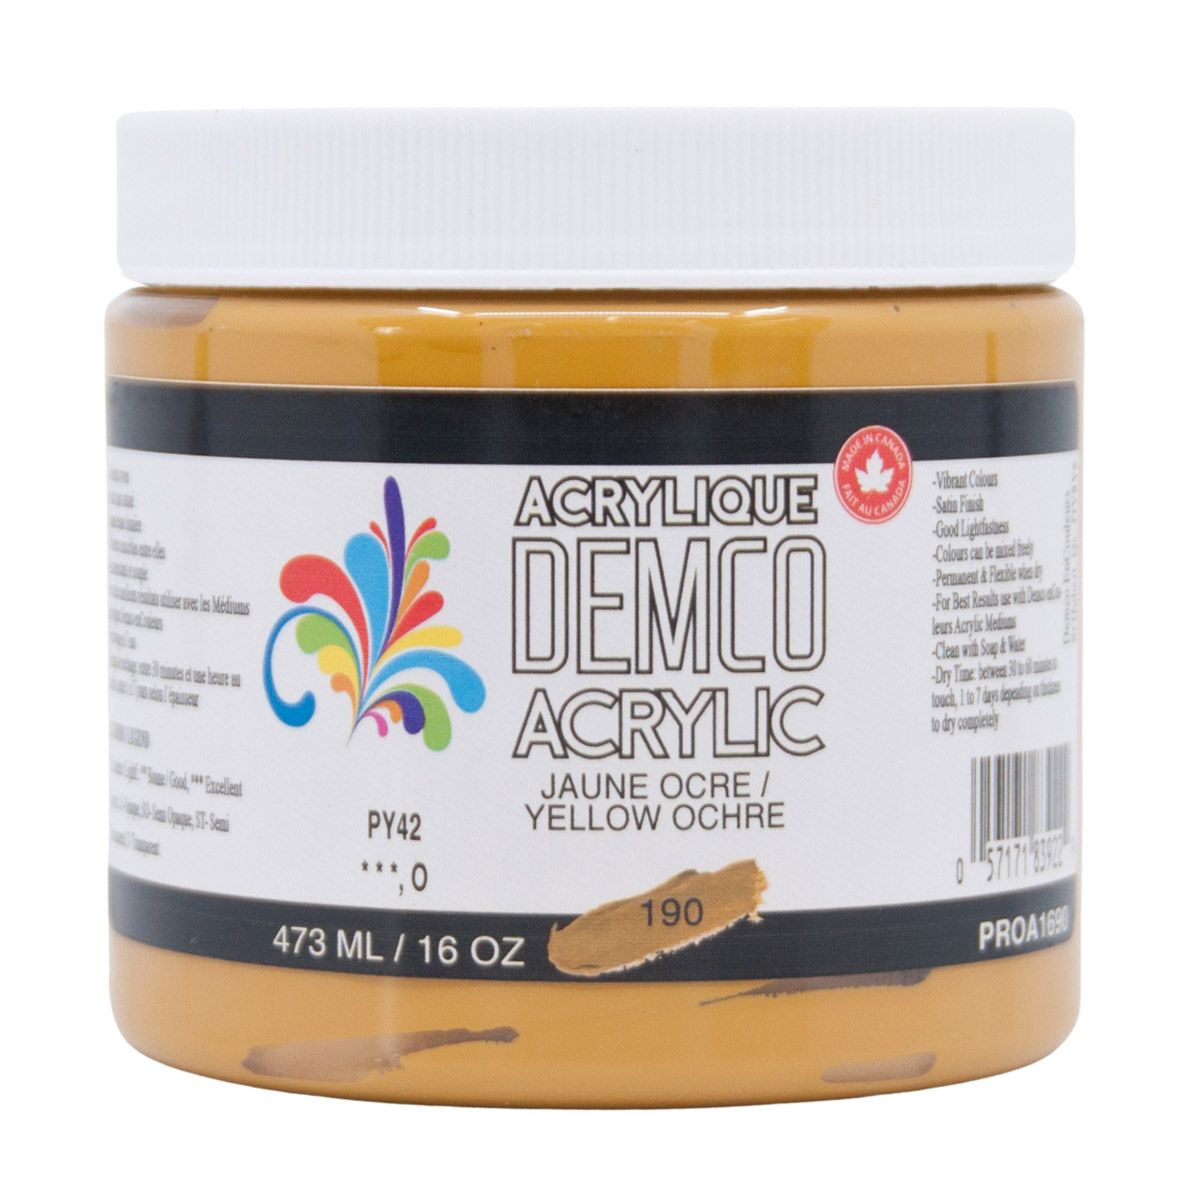 Demco Acrylic Yellow Ochre 473ml/16oz